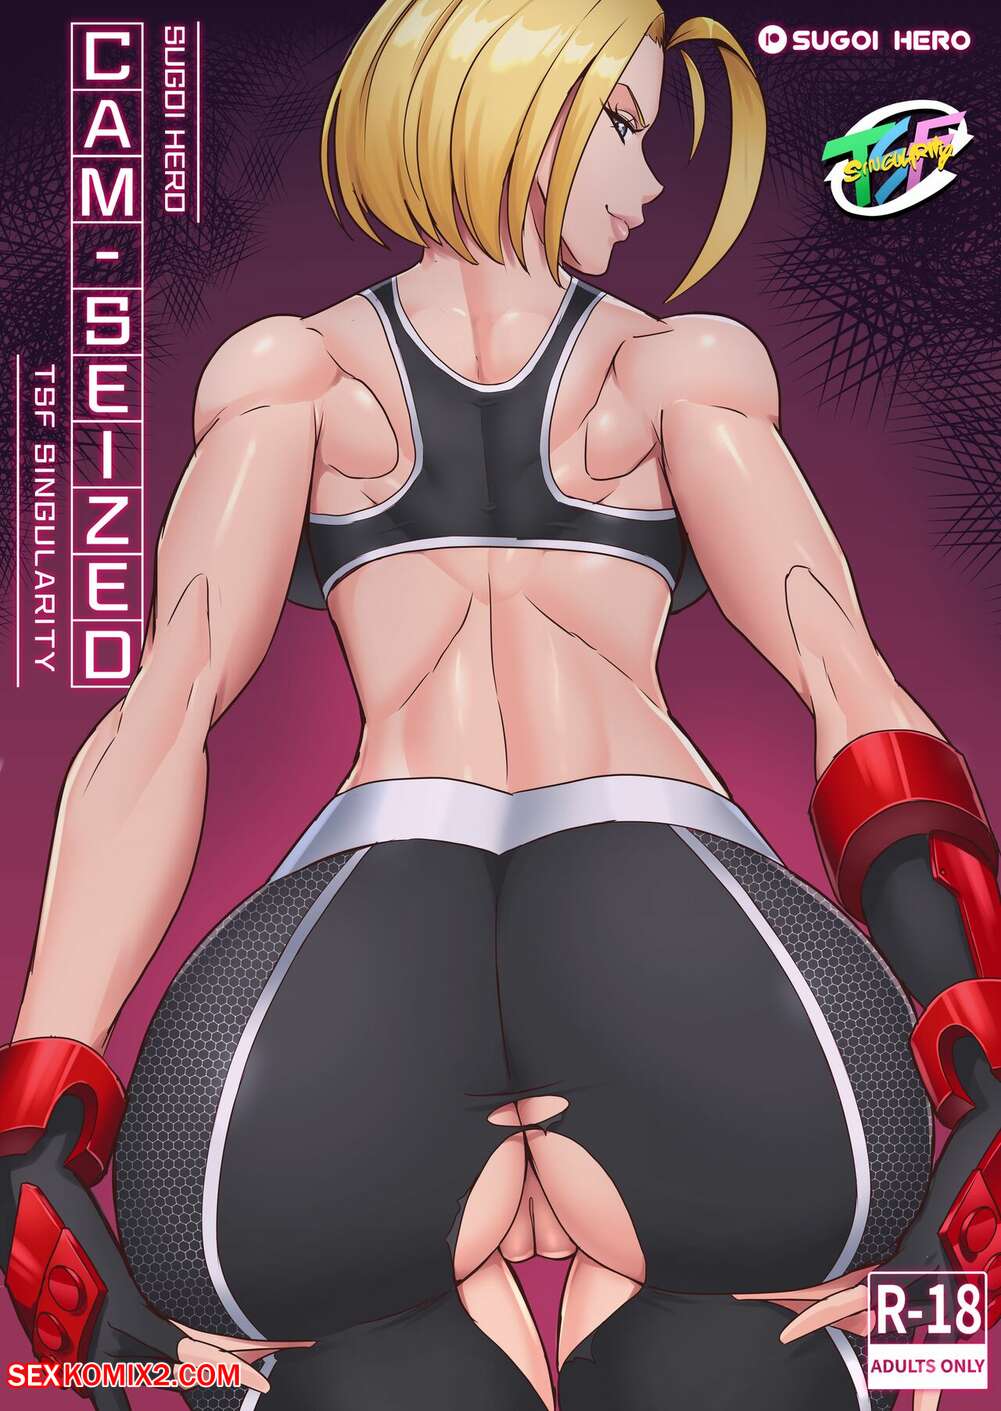 âœ…ï¸ Porn comic CamSeized. Street Fighter 6. Sugoi Hero. Sex comic hot sexy  babes | Porn comics in English for adults only | sexkomix2.com